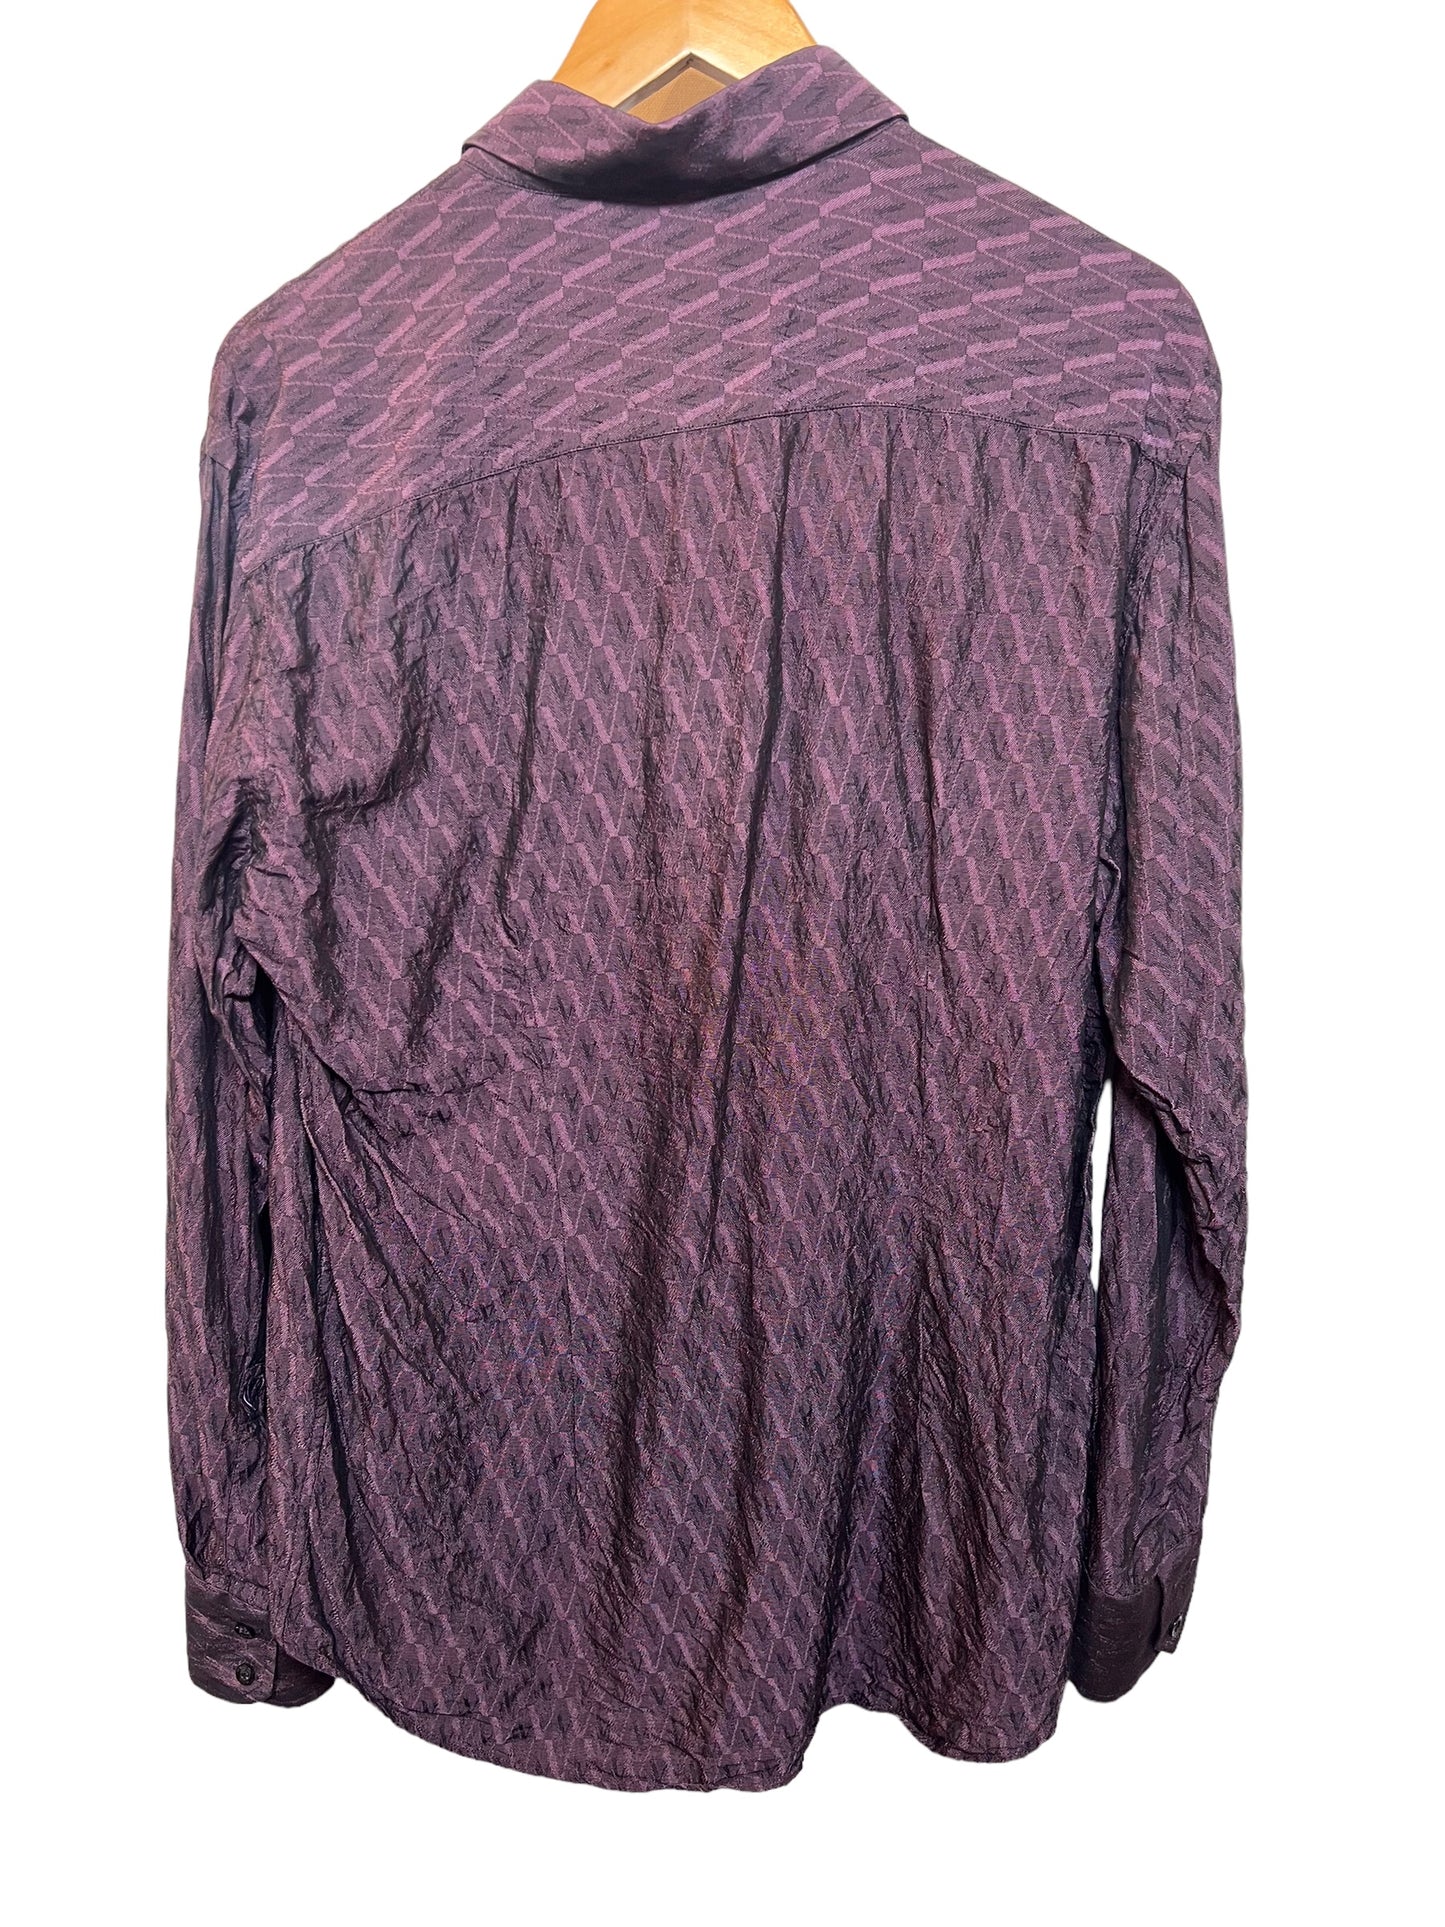 Versace Textured Shirt (Size L)